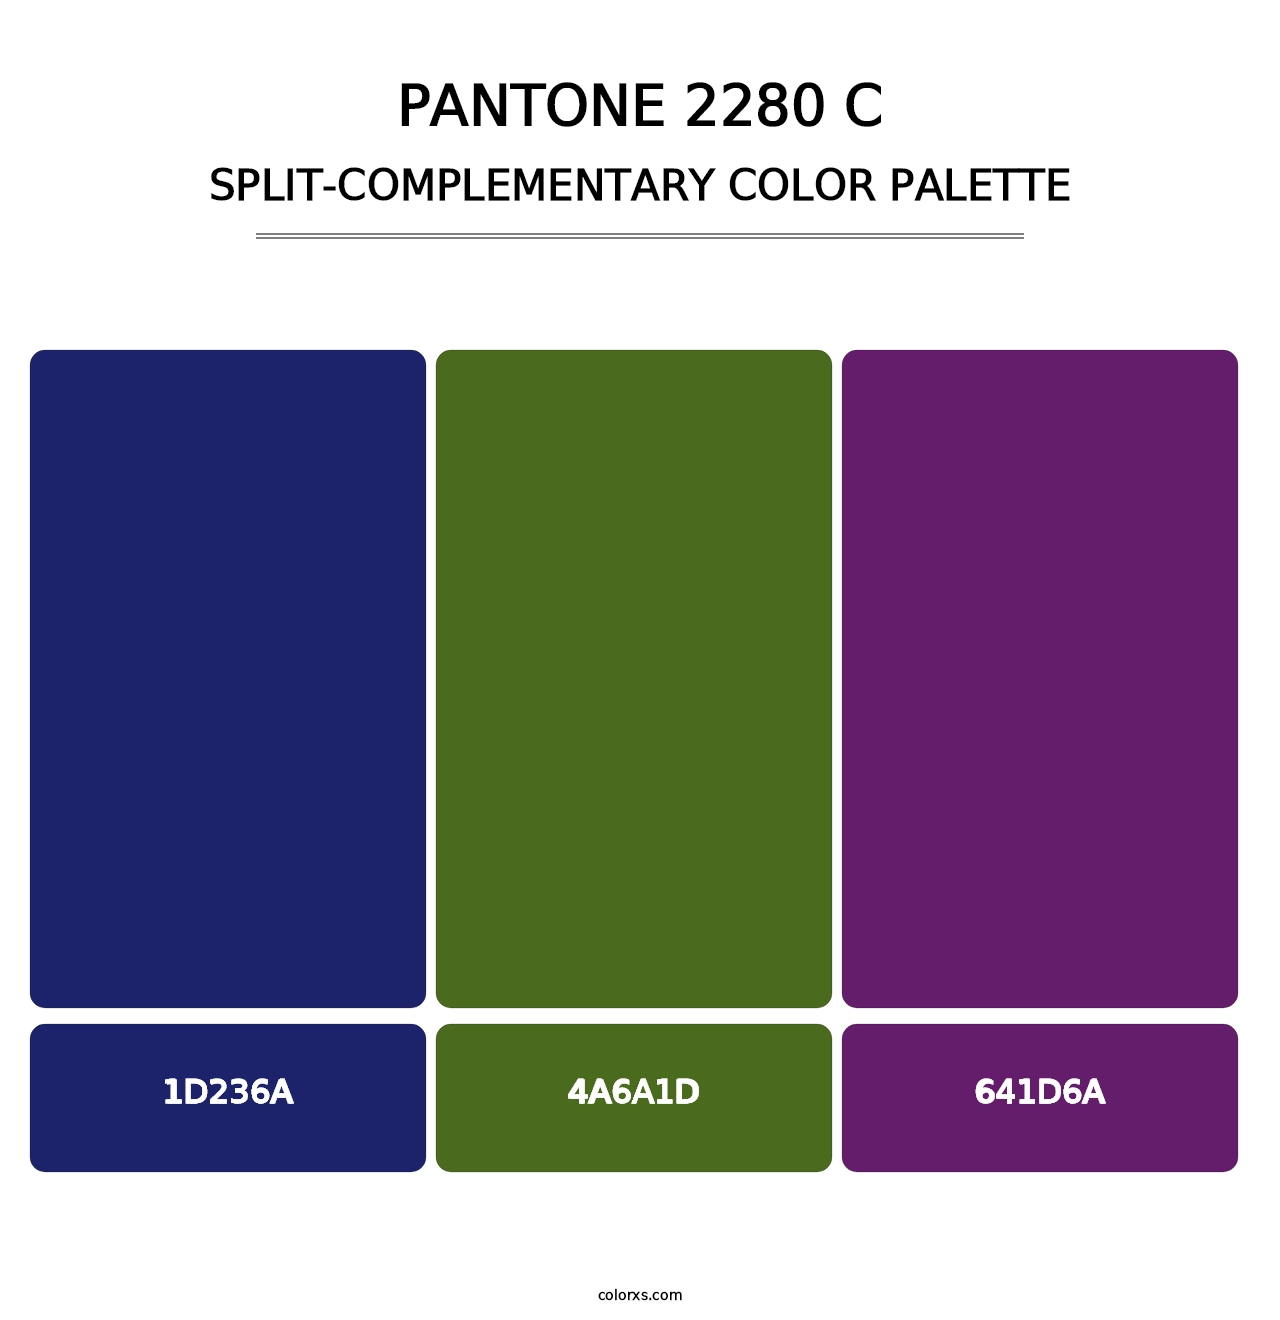 PANTONE 2280 C - Split-Complementary Color Palette